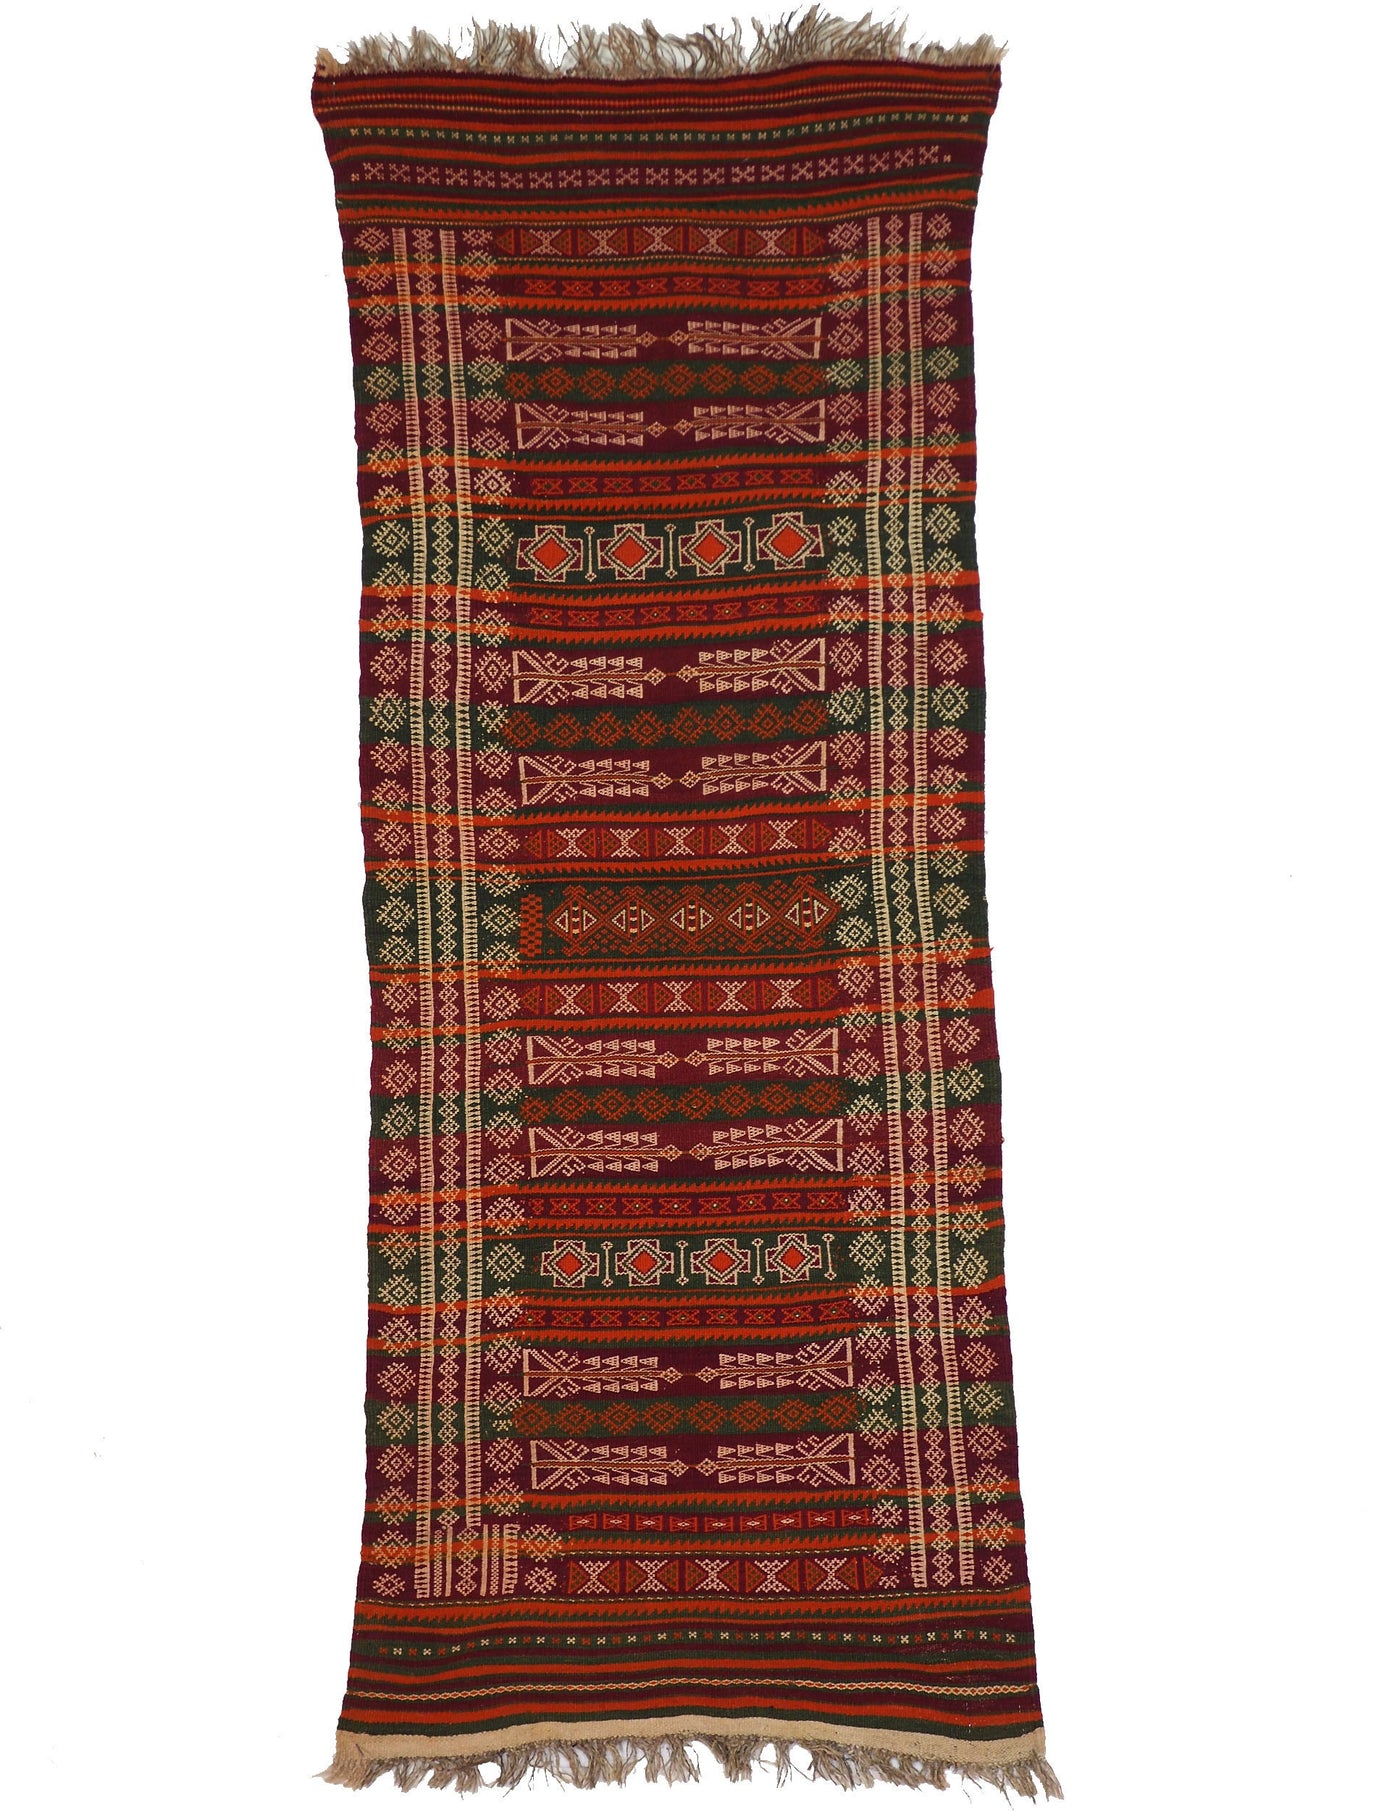 220x93 cm Antik orient handgewebte Teppich Nomaden  Balouch sumakh kelim afghan Beloch kilim Nr-19/PK-1 Teppiche Orientsbazar   